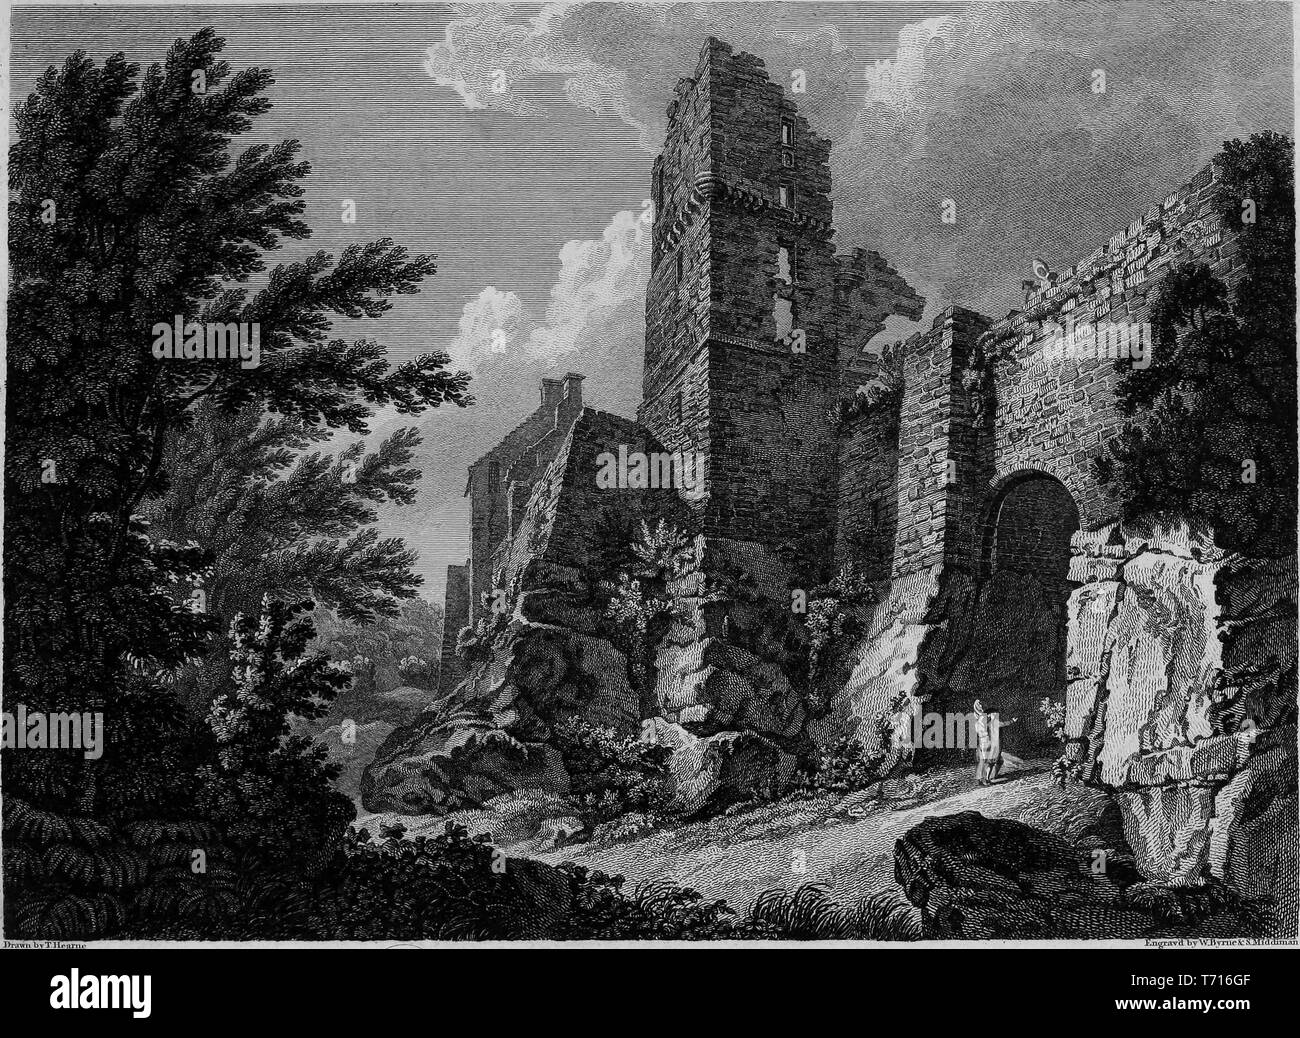 Incisione del Roslin Castello nel Midlothian, Scozia, dal libro "Antichità di Gran Bretagna' da William Byrne e Thomas Hearne, 1825. La cortesia Internet Archive. () Foto Stock